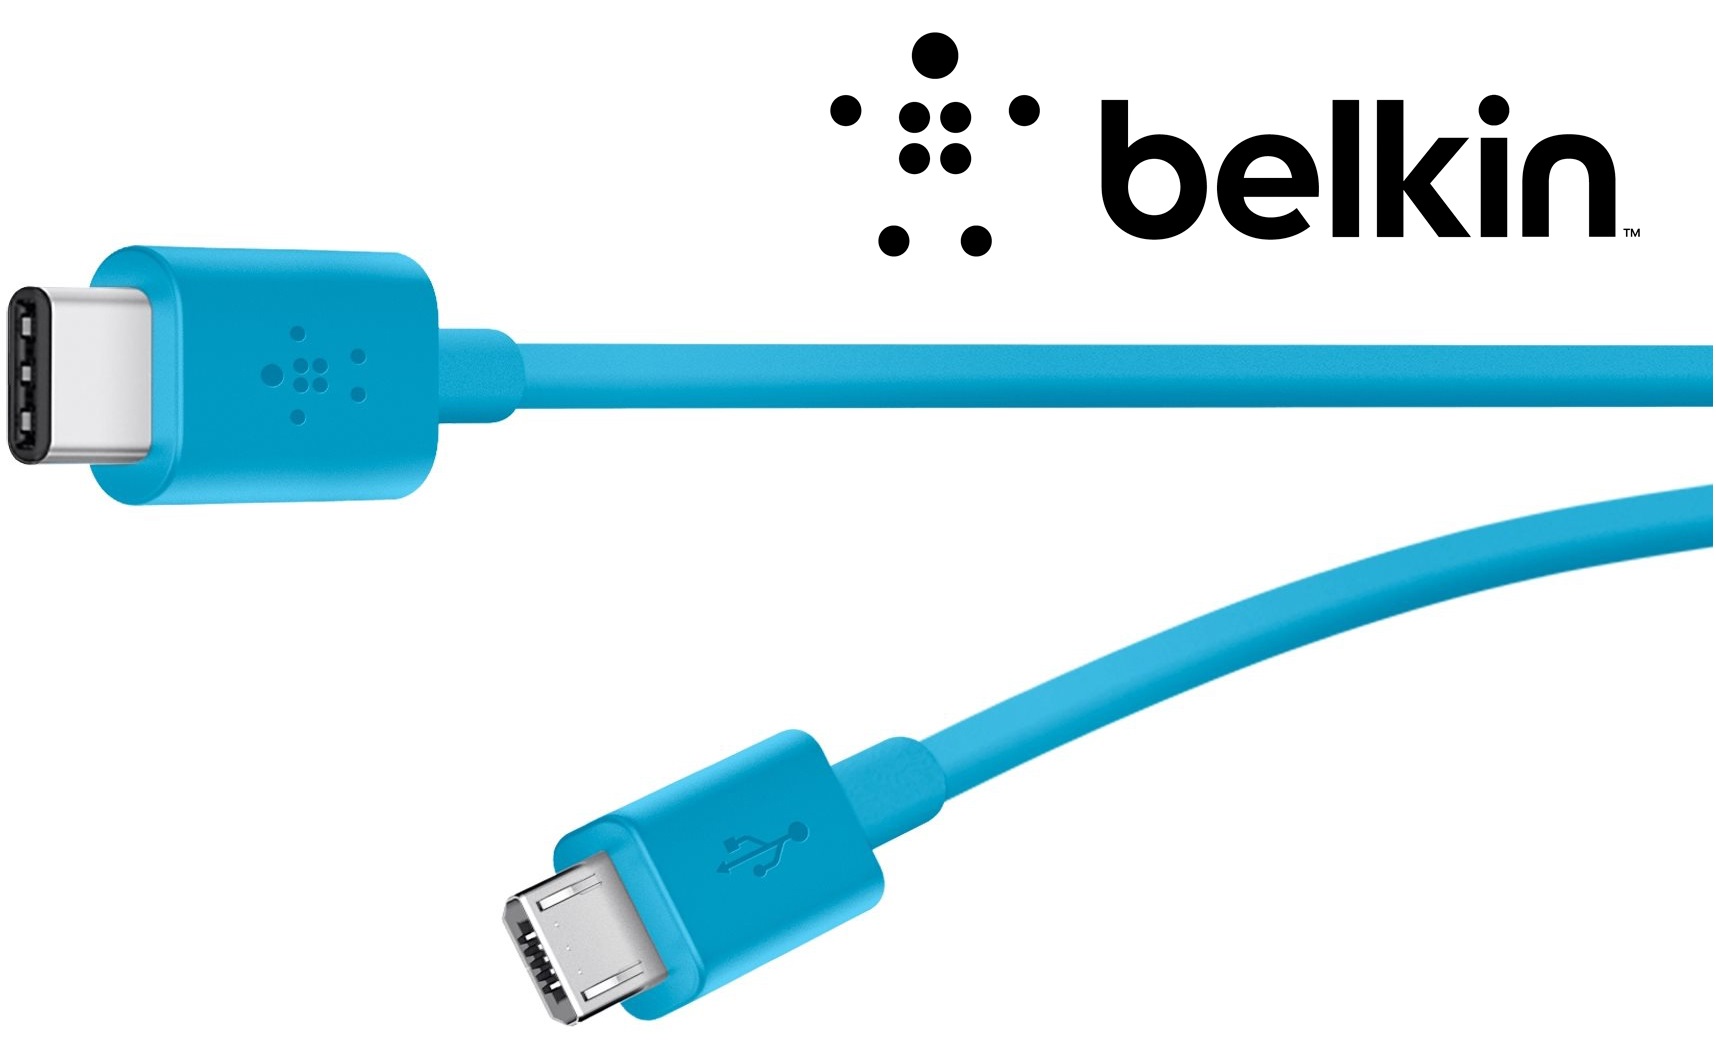 Kabely Belkin s USB-C jsou sázkou na kvalitu a spolehlivost